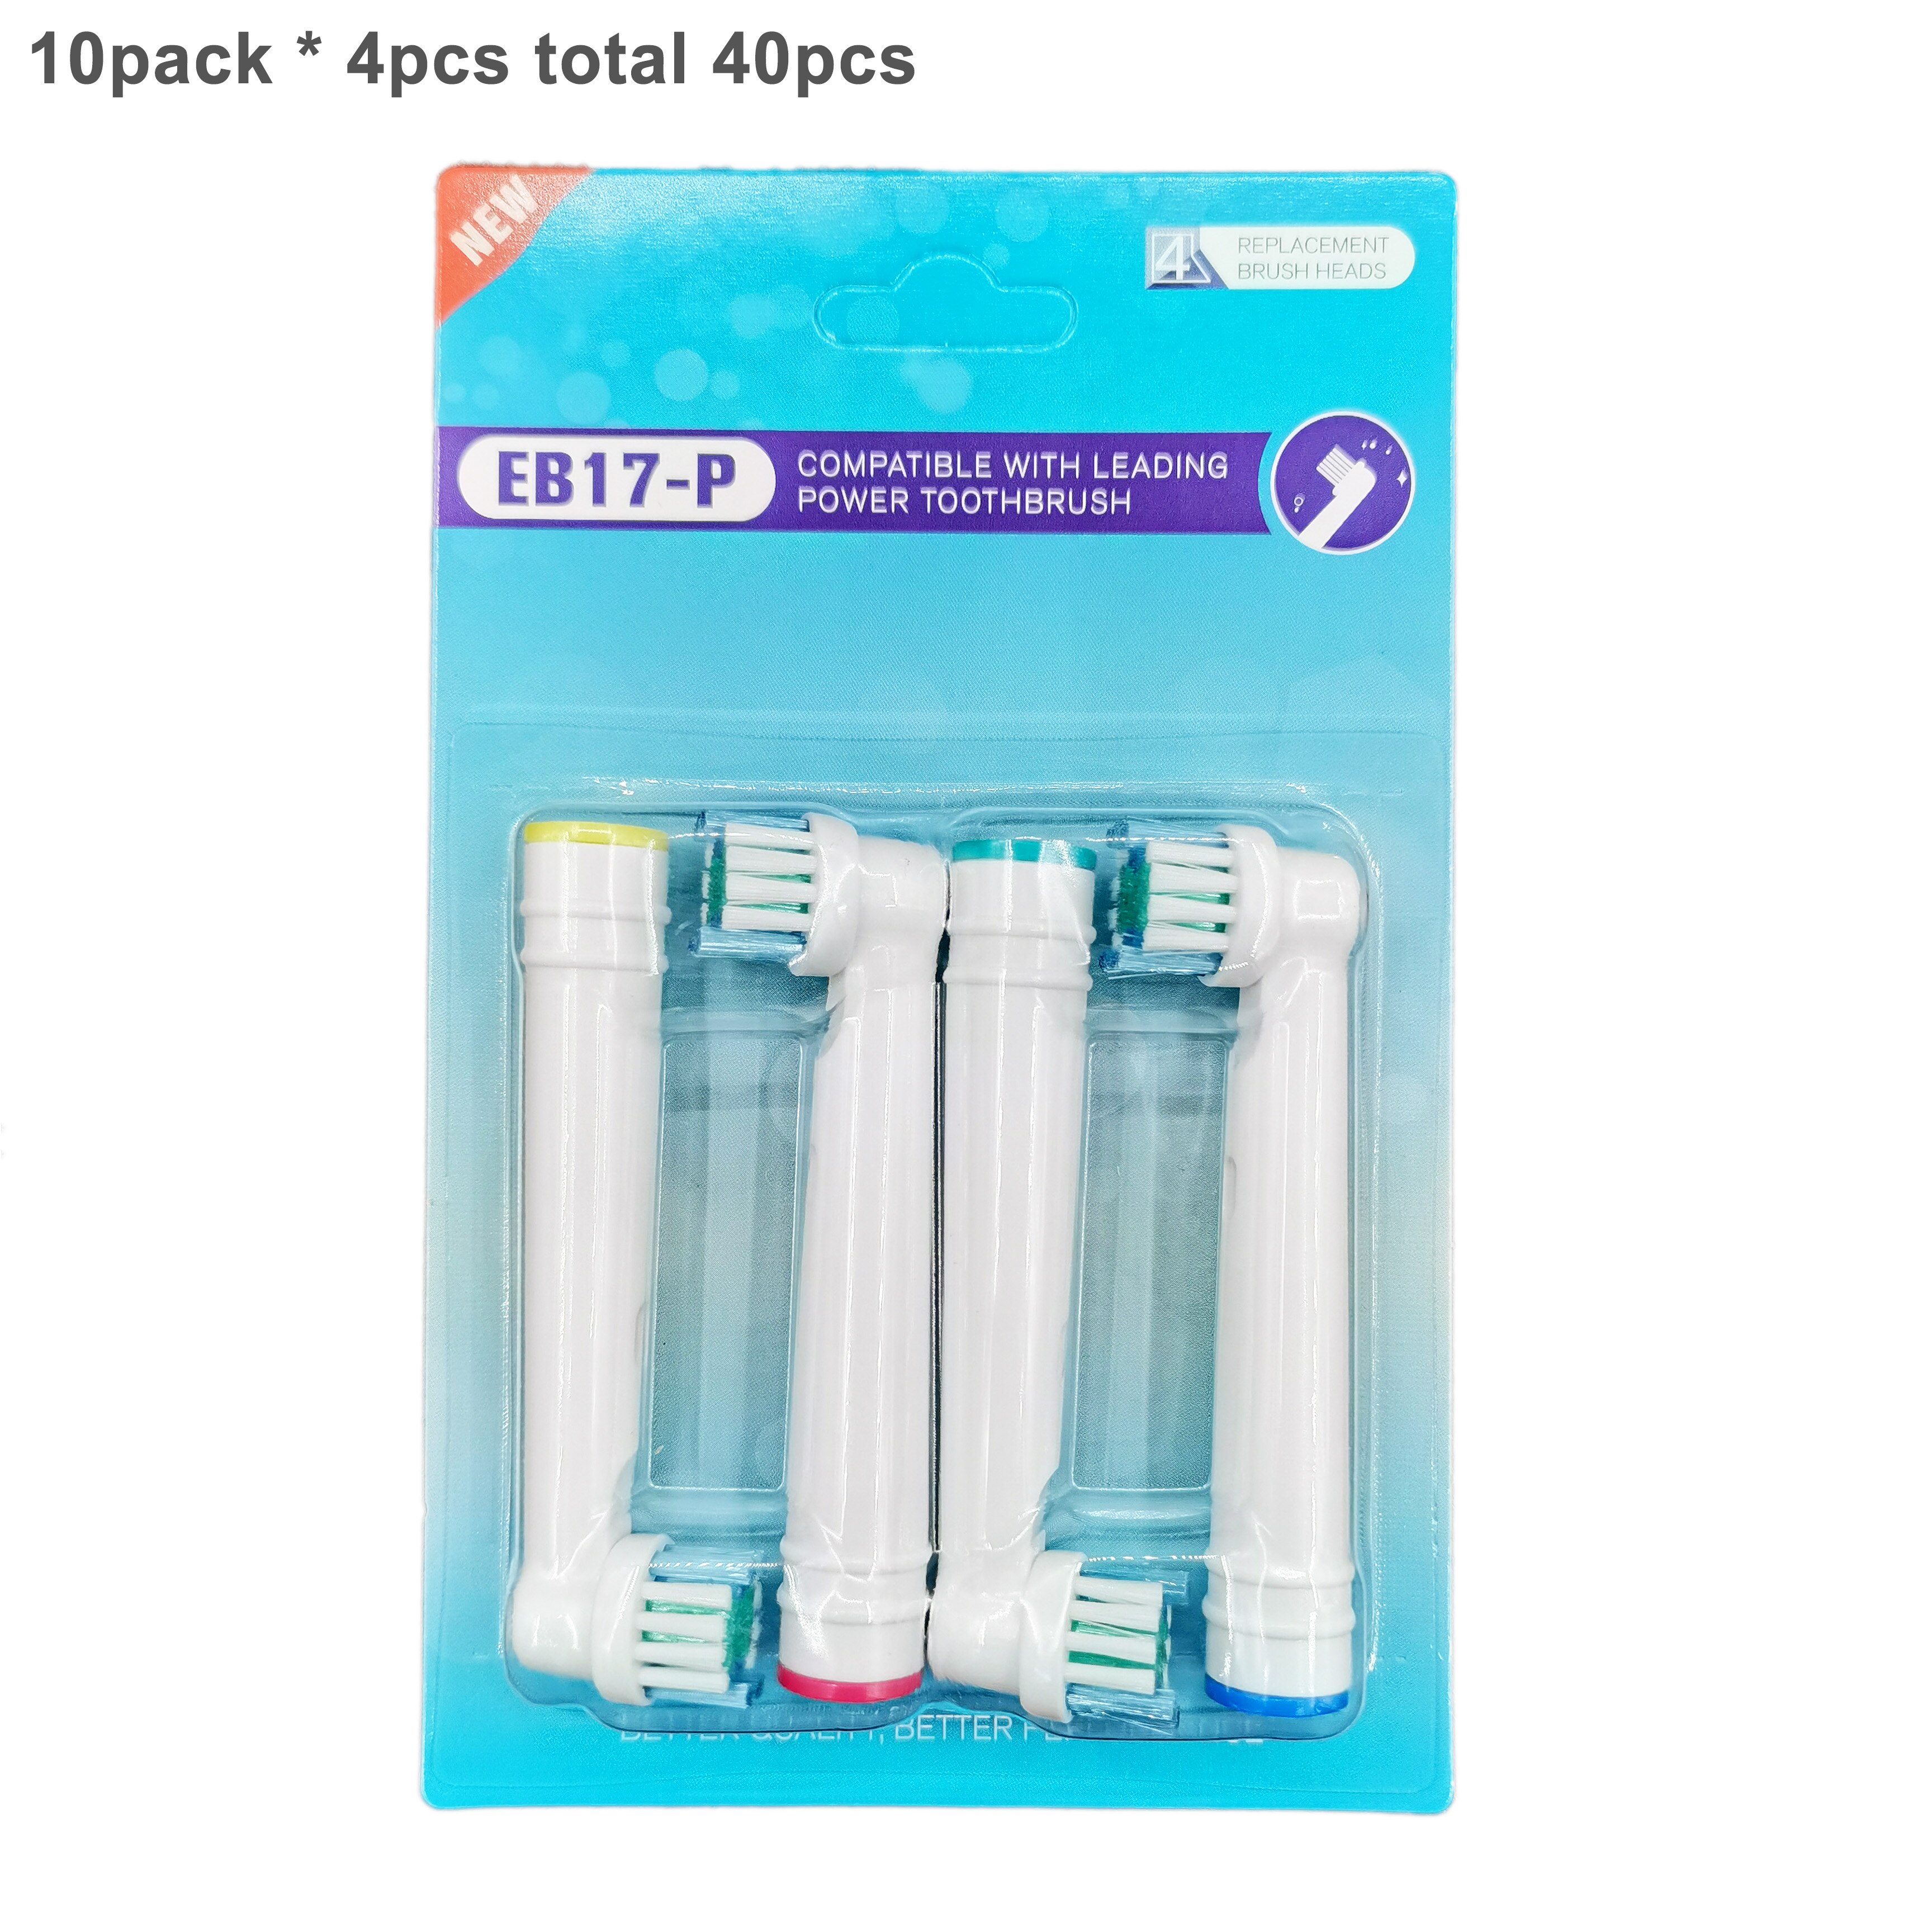 40Pcs Vip Tu Voor Oral B Elektrische Tandenborstel Opzetborstels, gevoelige Opzetborstels Extra Zachte Haren D25 D30 D32